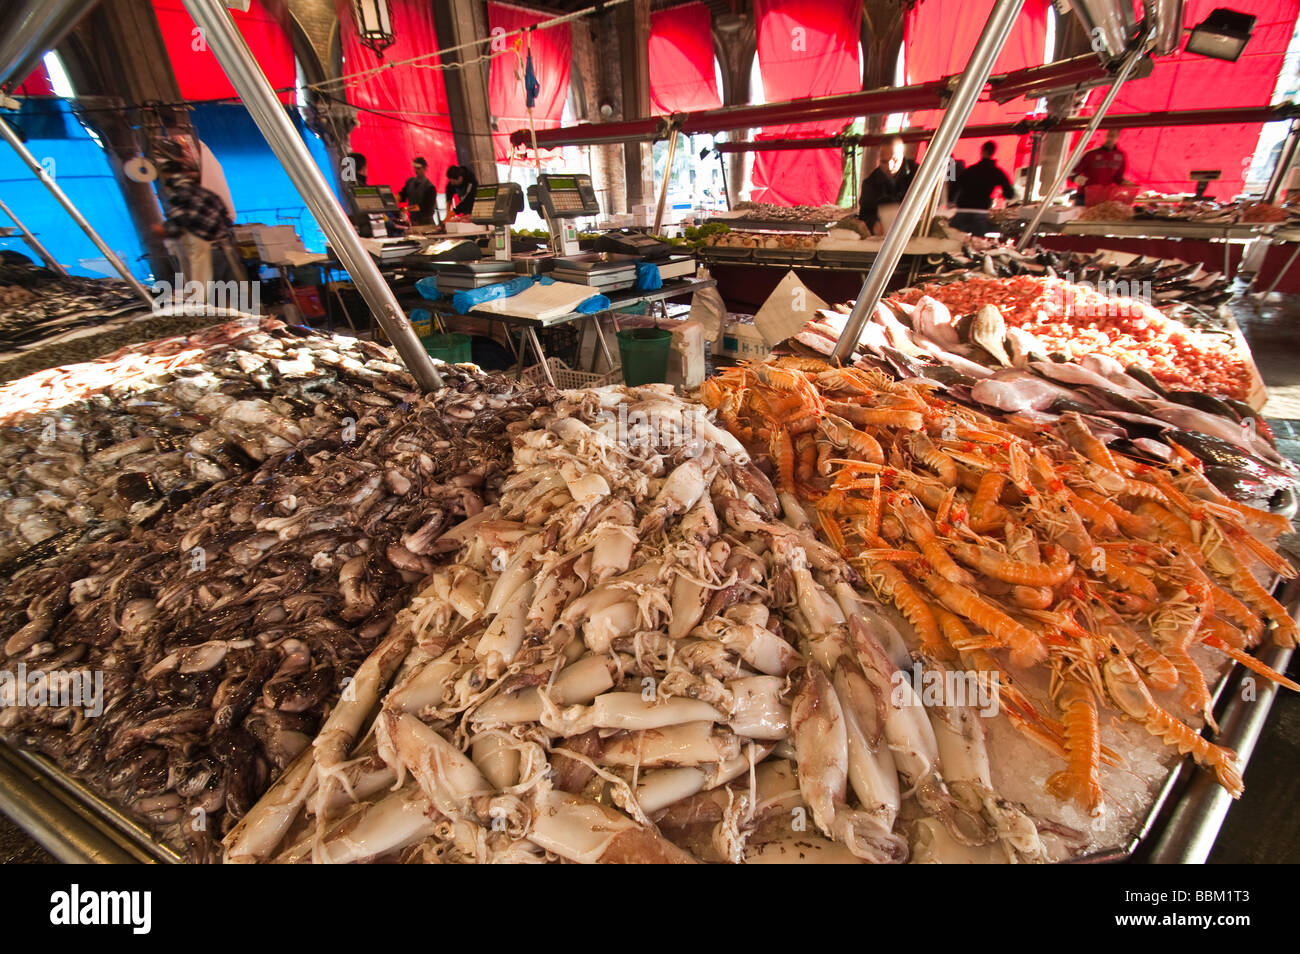 Seafood stall at the Peschería Rialto fish market San Polo Venice Italy Stock Photo